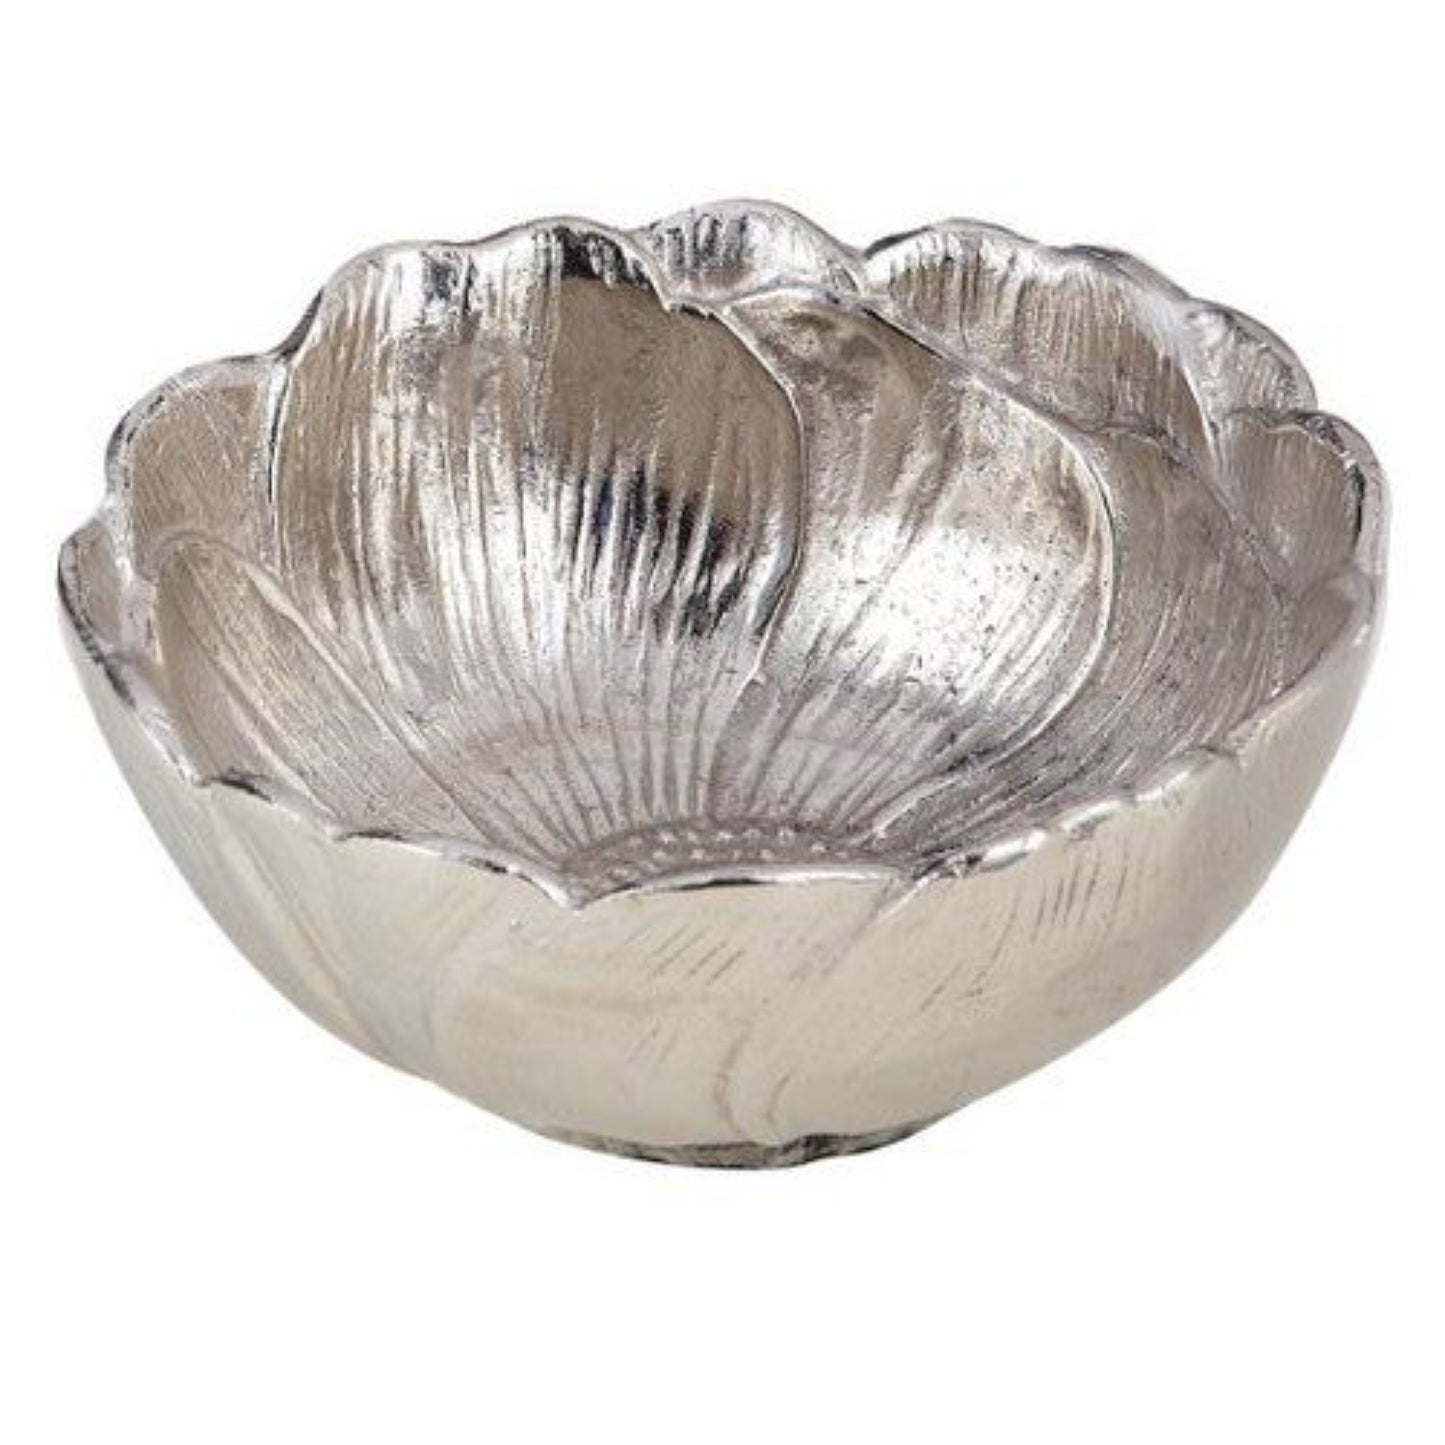 Leeber Lotus Nut Bowl,  5", Nickel Plated, Aluminum